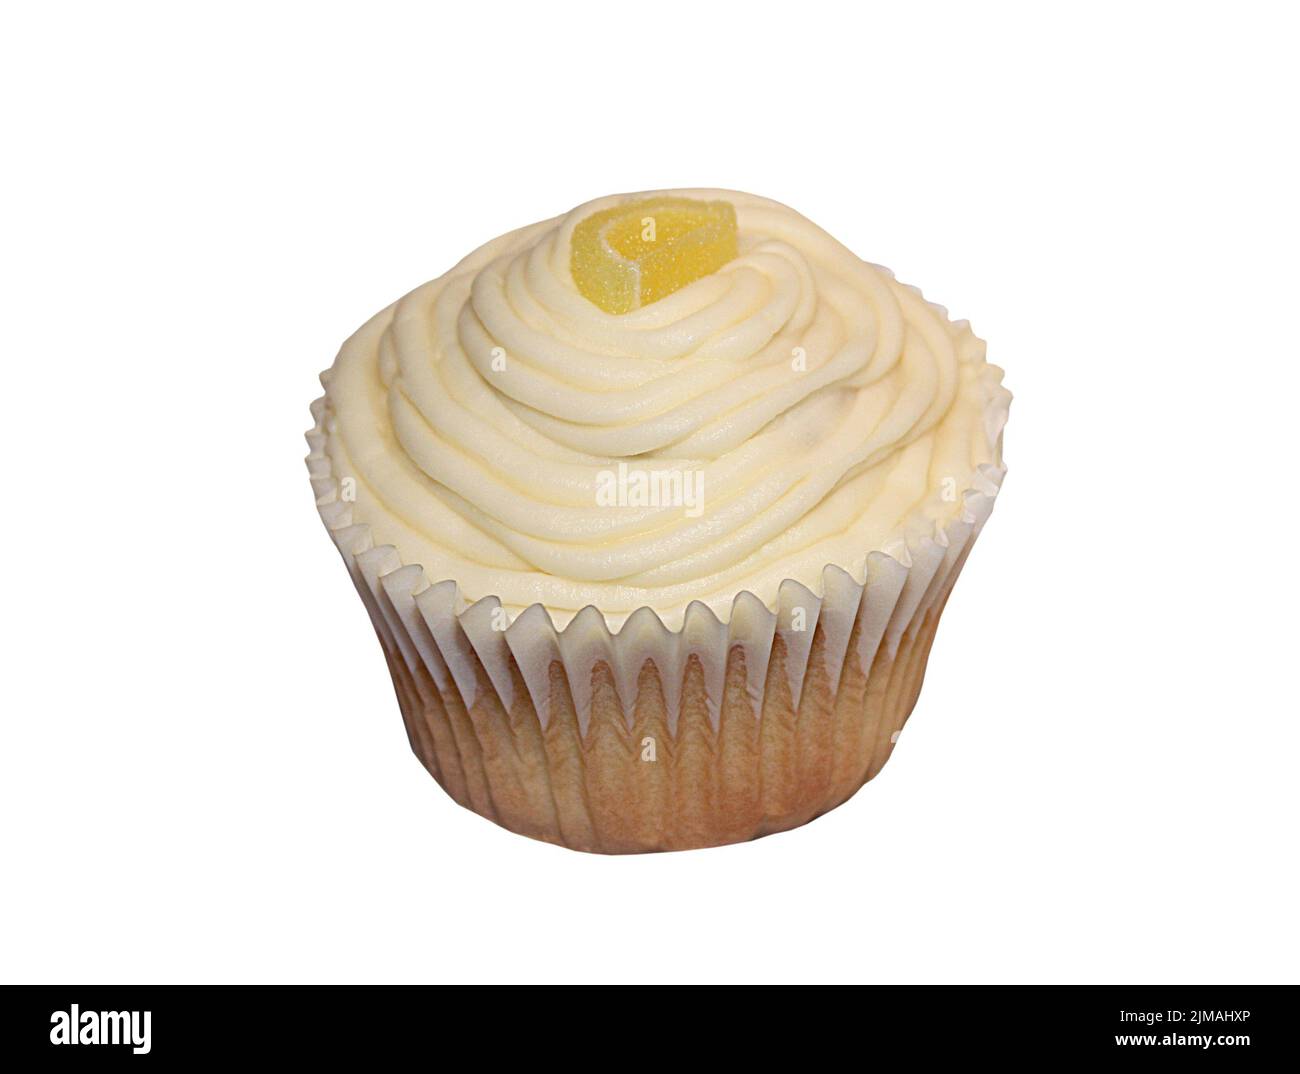 Una deliziosa torta Iced Muffin Cup aromatizzata al limone. Foto Stock